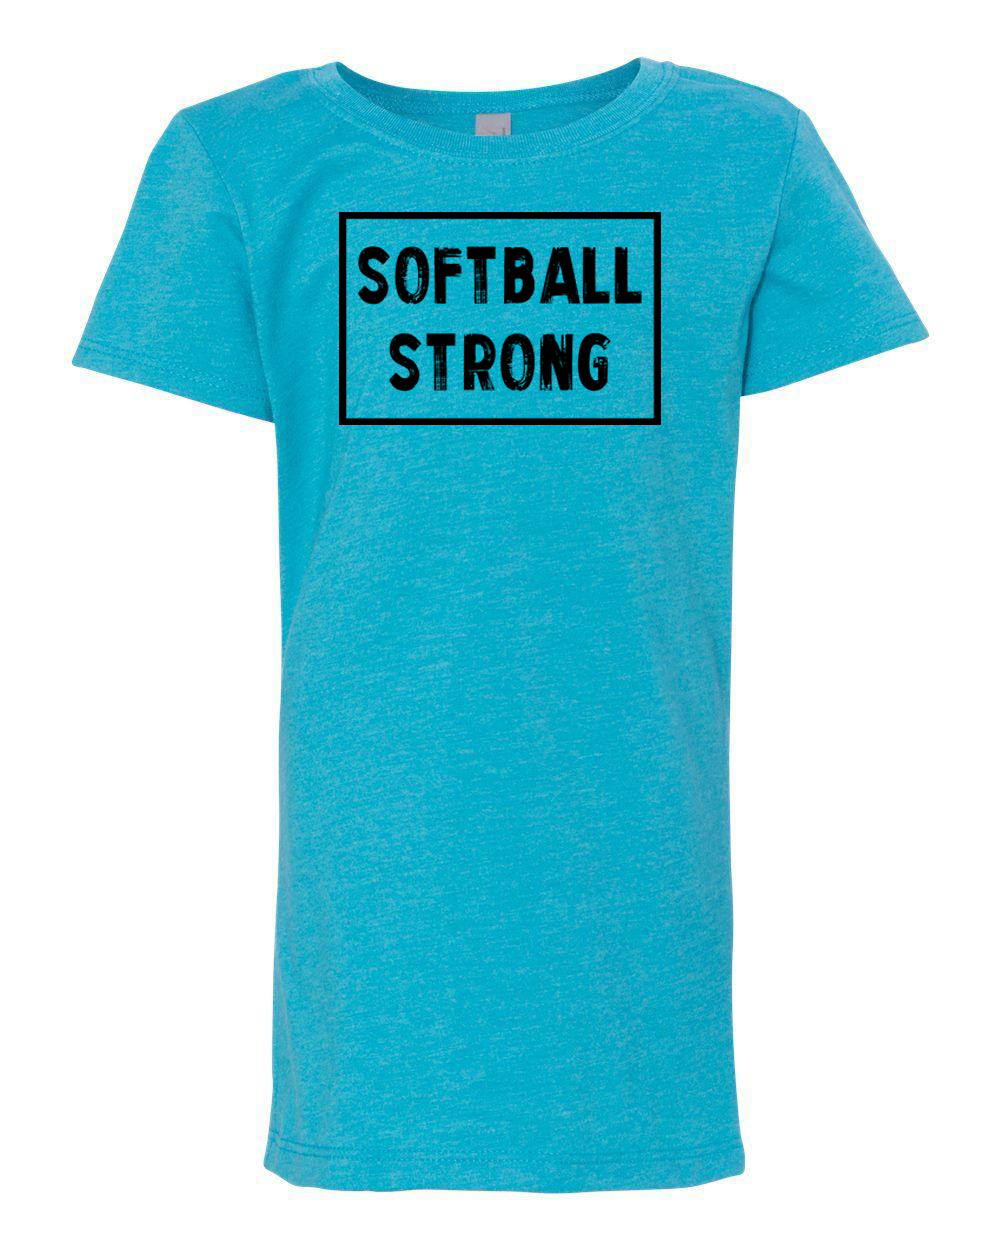 Softball Strong Girls T-Shirt Ocean Blue